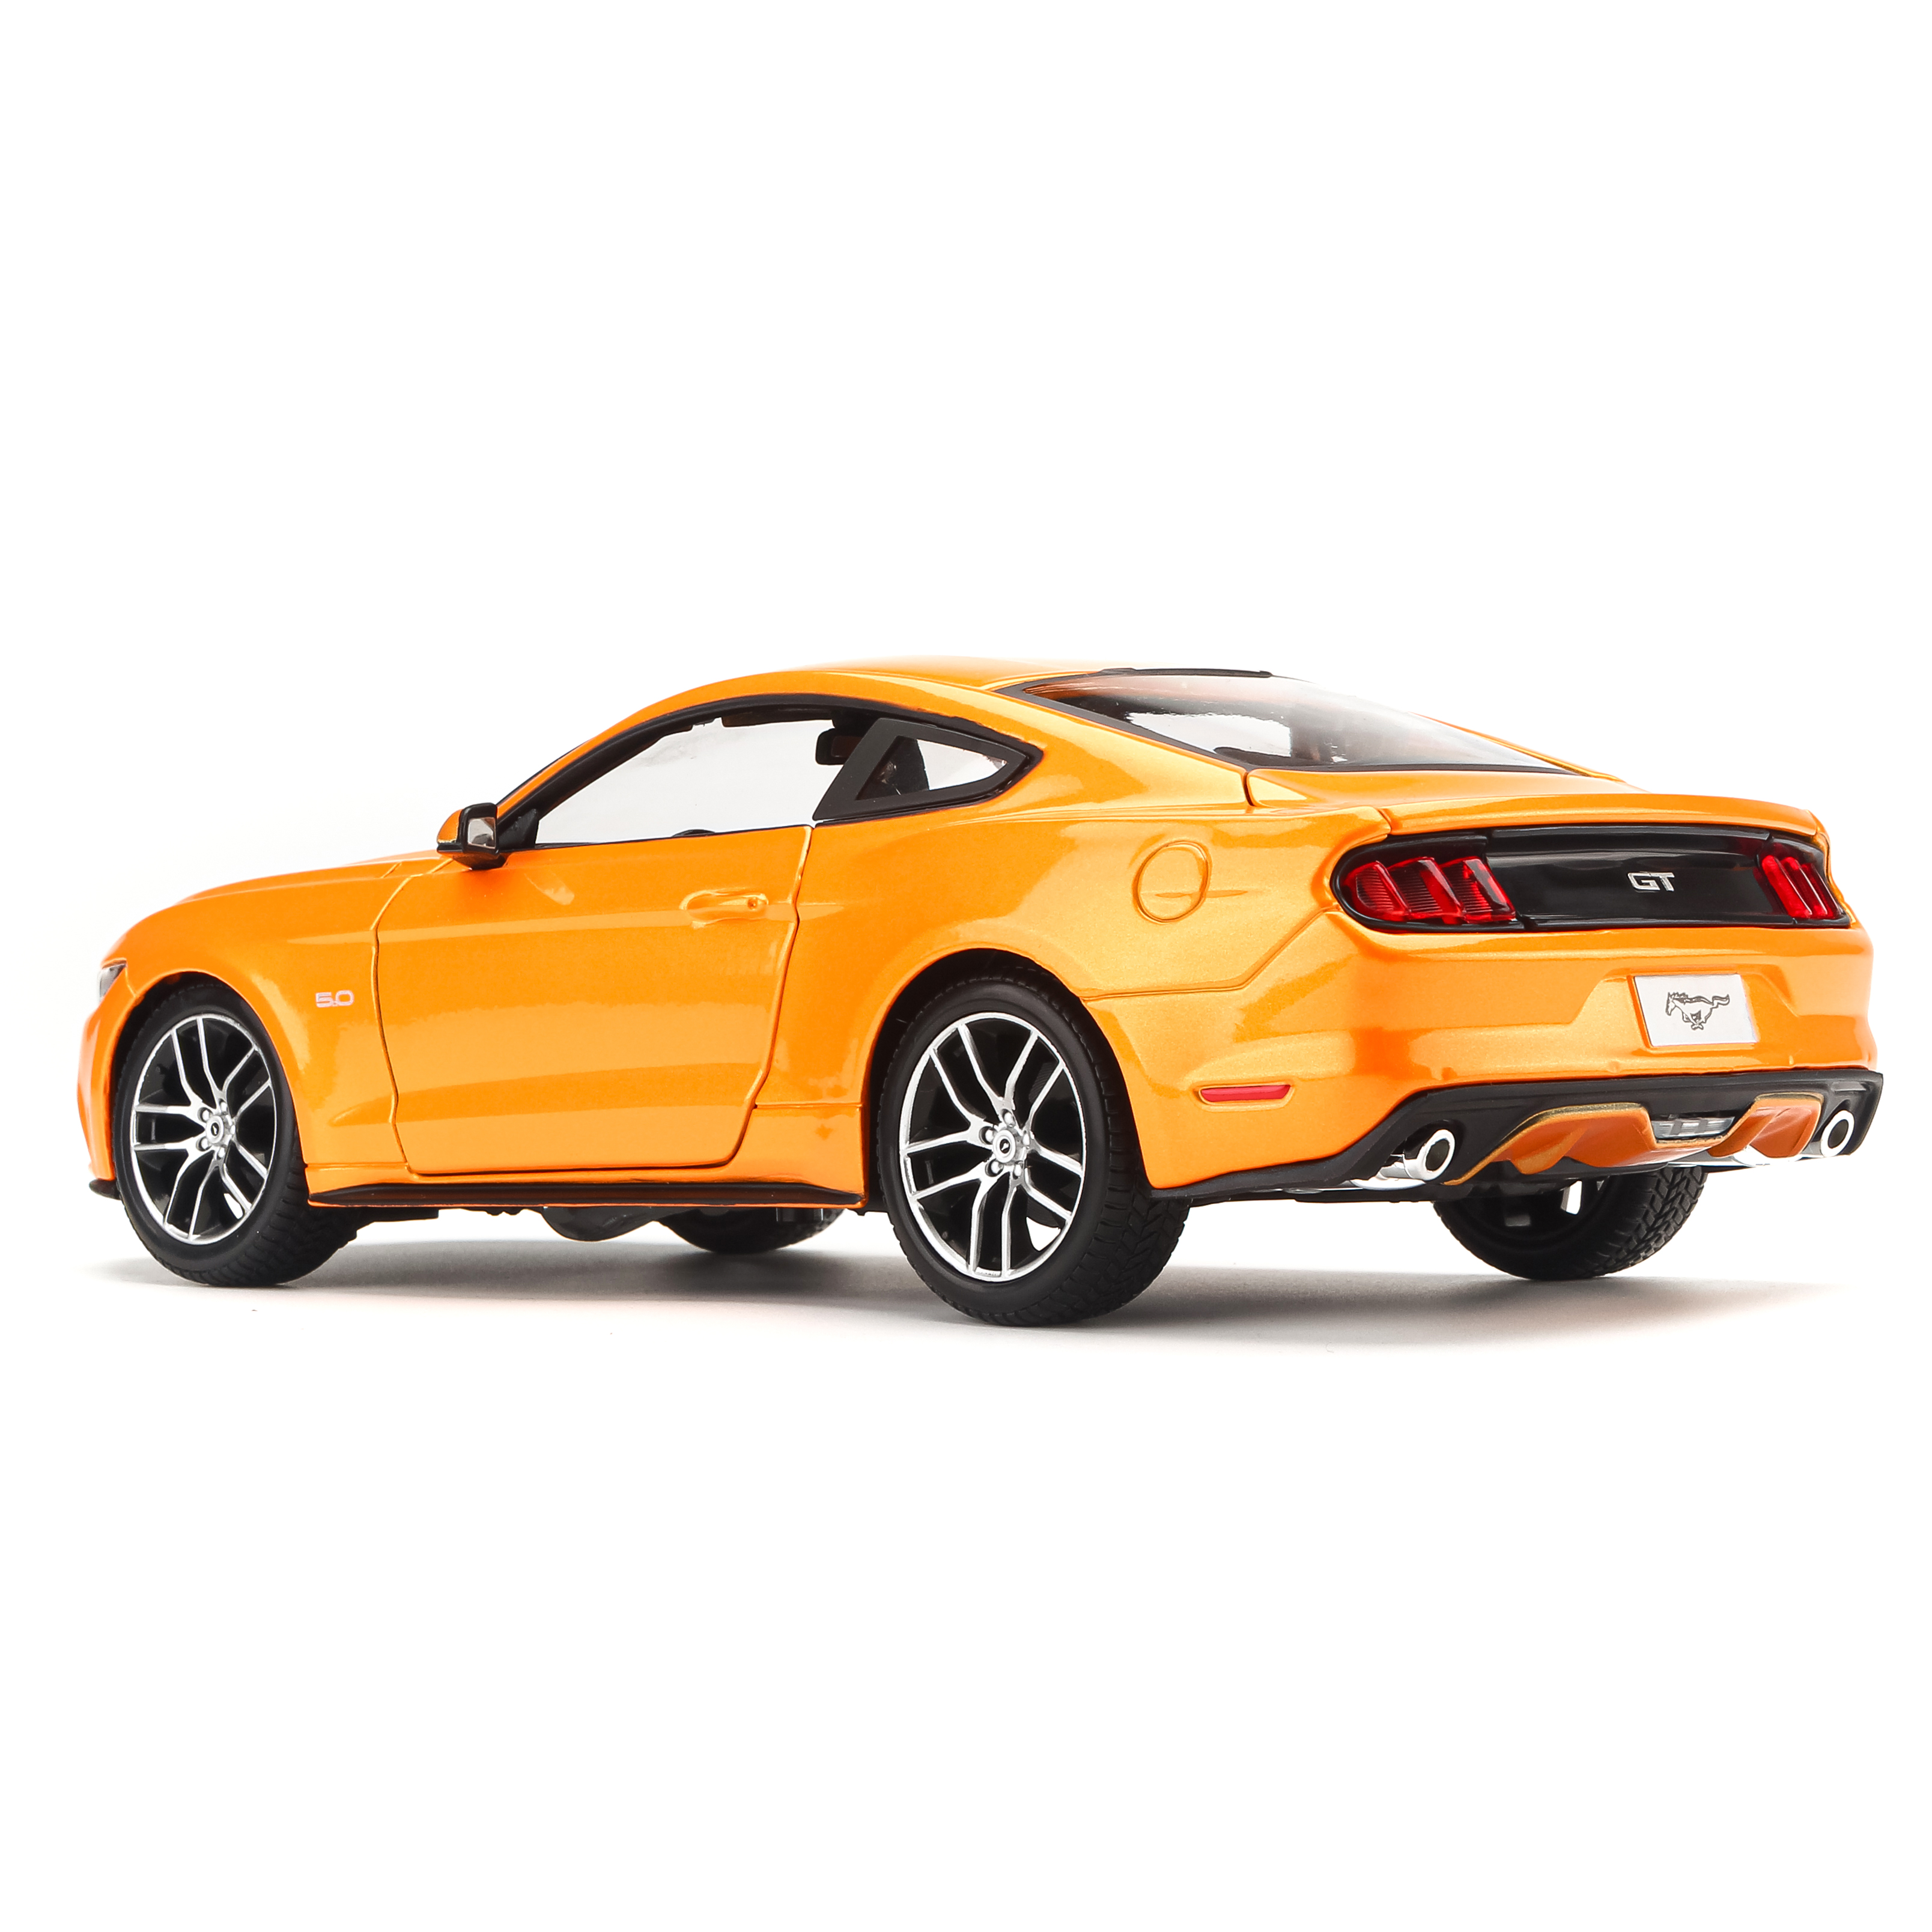 Mô Hình Xe Ford Mustang Orange GT 2015 1:18 Maisto MH-31197